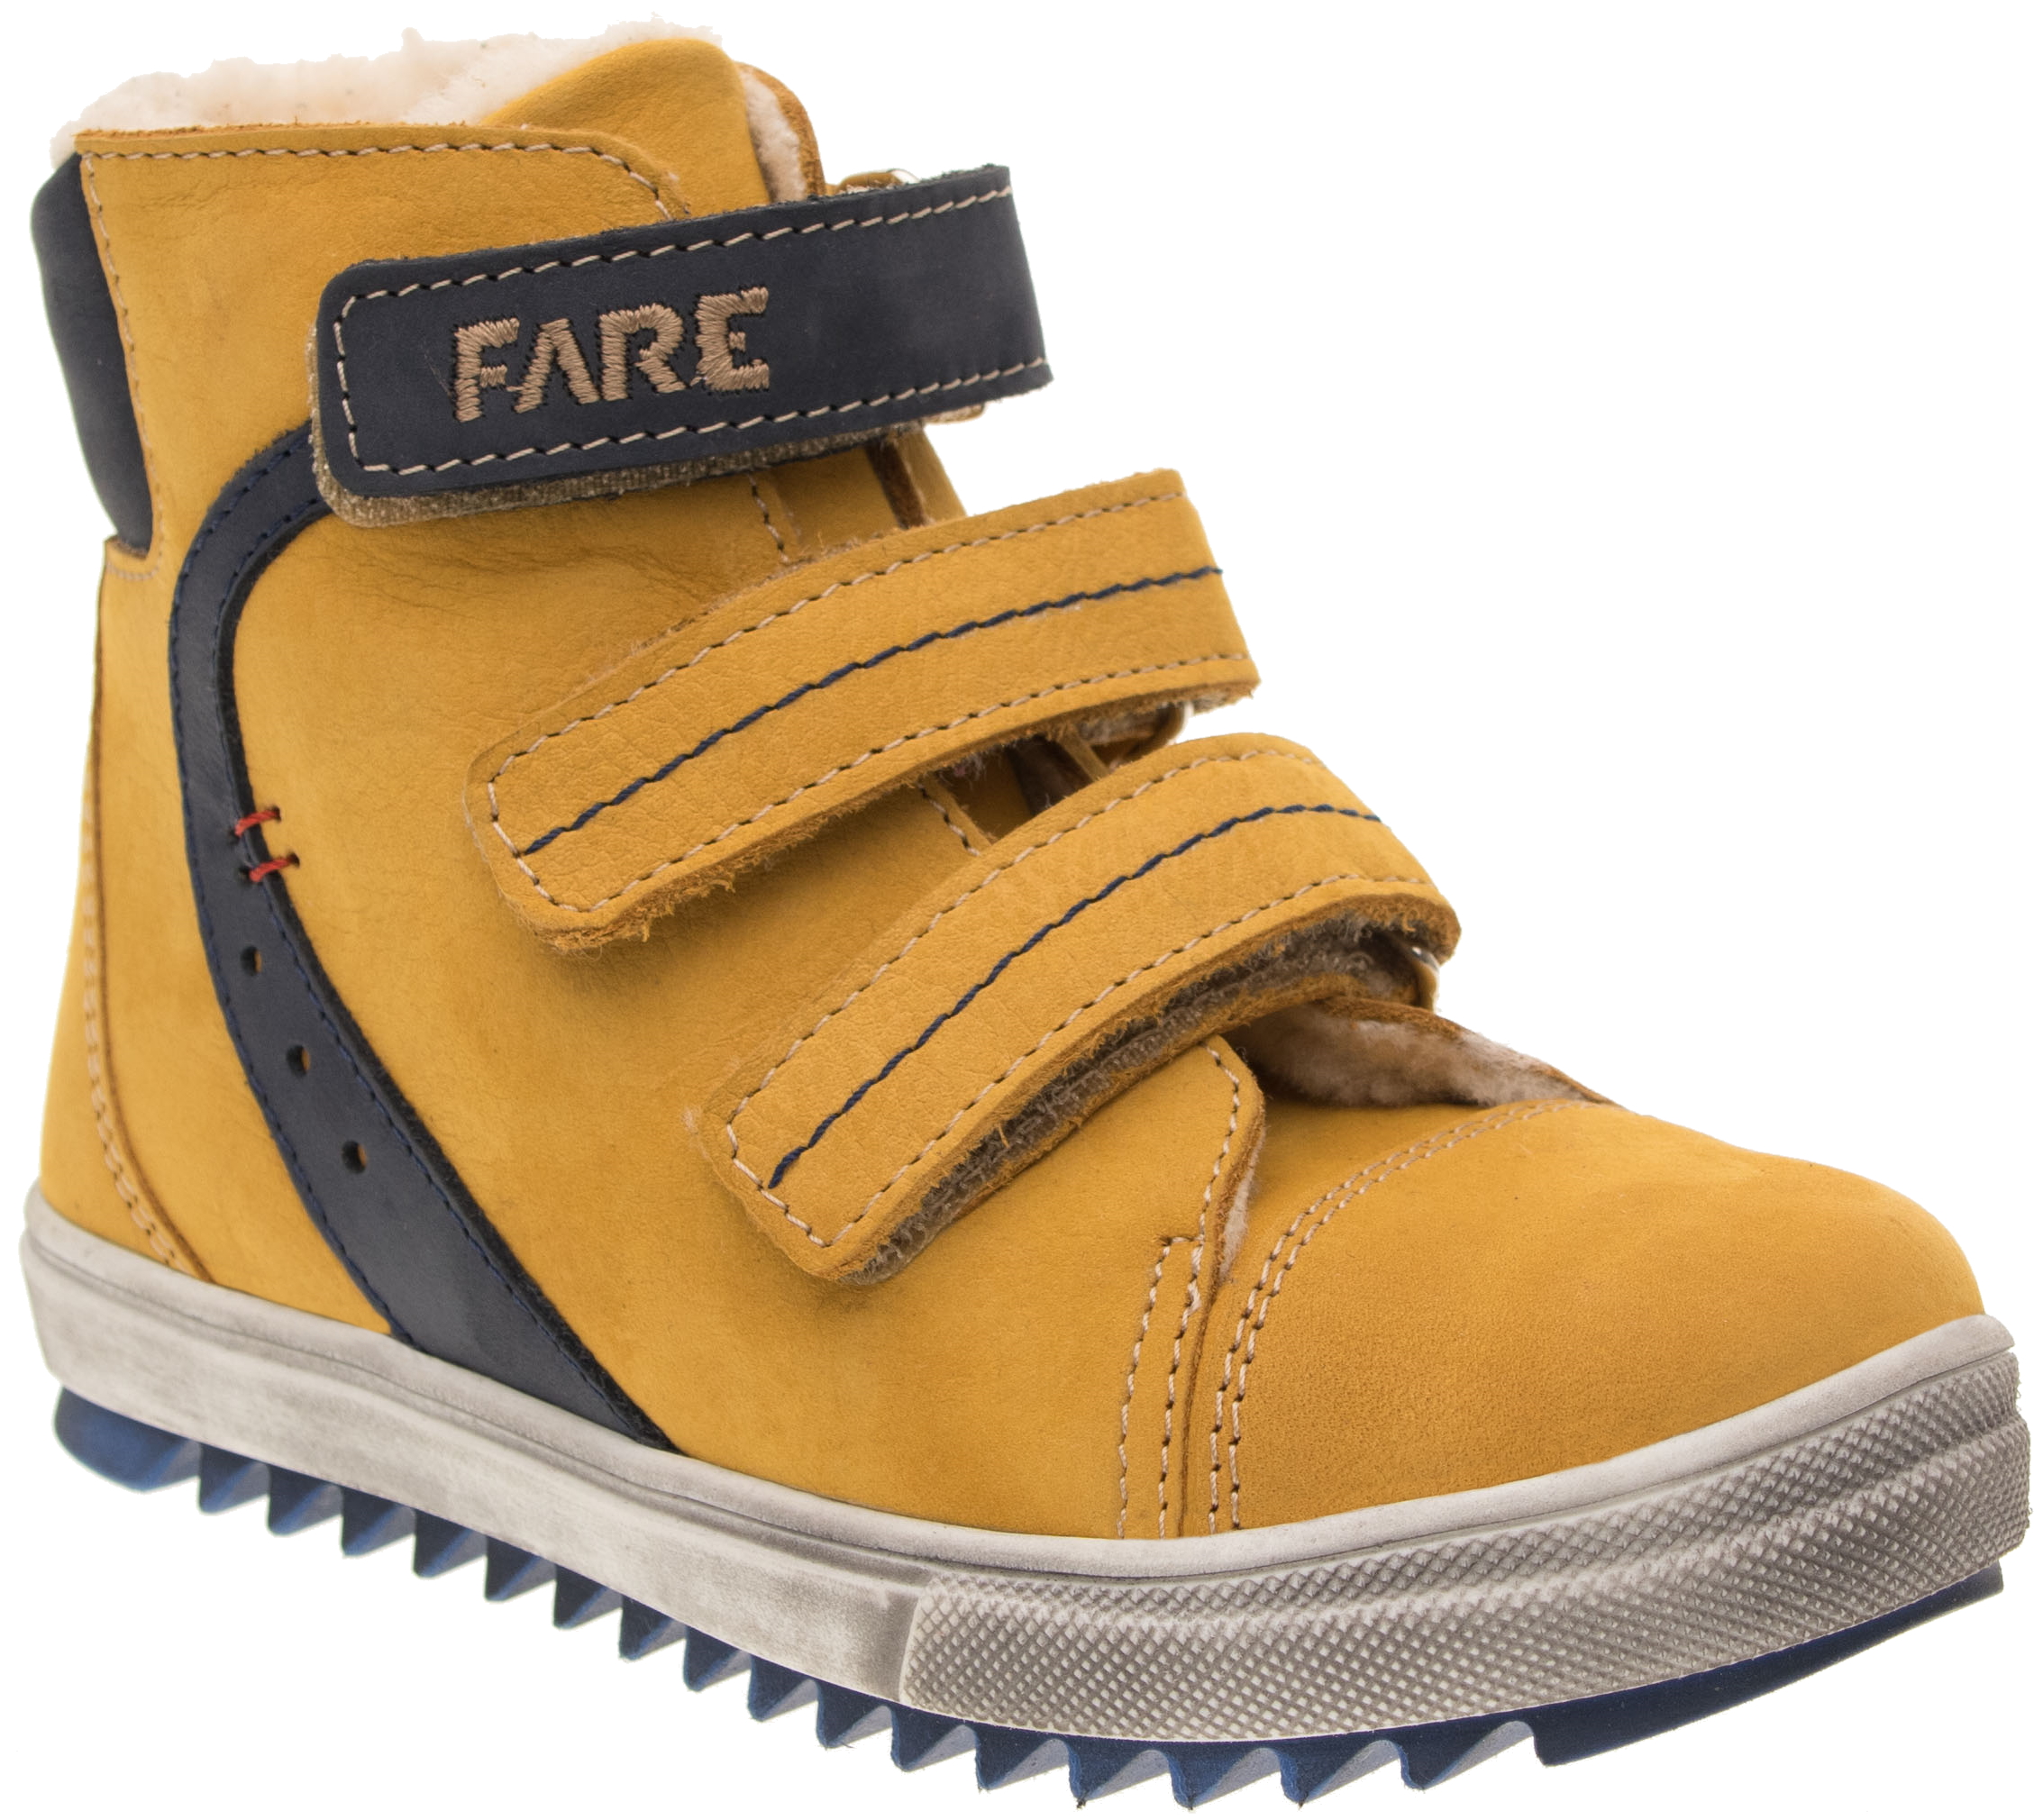 Dětské zimní kotníkové boty Fare 841281 žluté Velikost: 29 (EU)